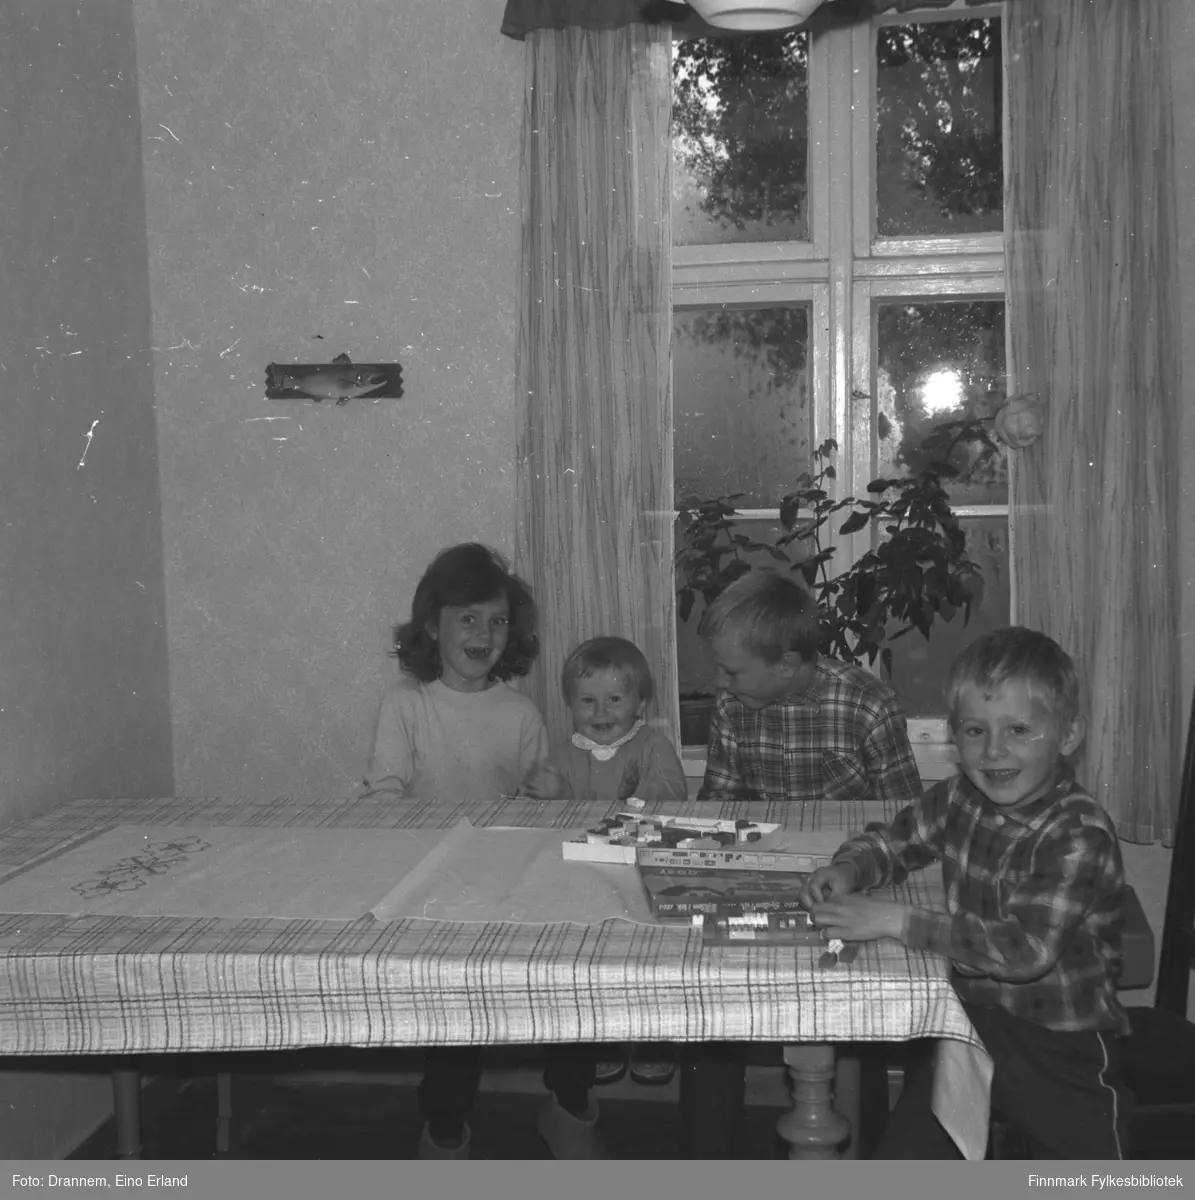 Fire barn sitter ved et bord med Lego-klosser foran seg. De er fra venstre: Kari, Einar, Ole og Hans Gabrielsen.